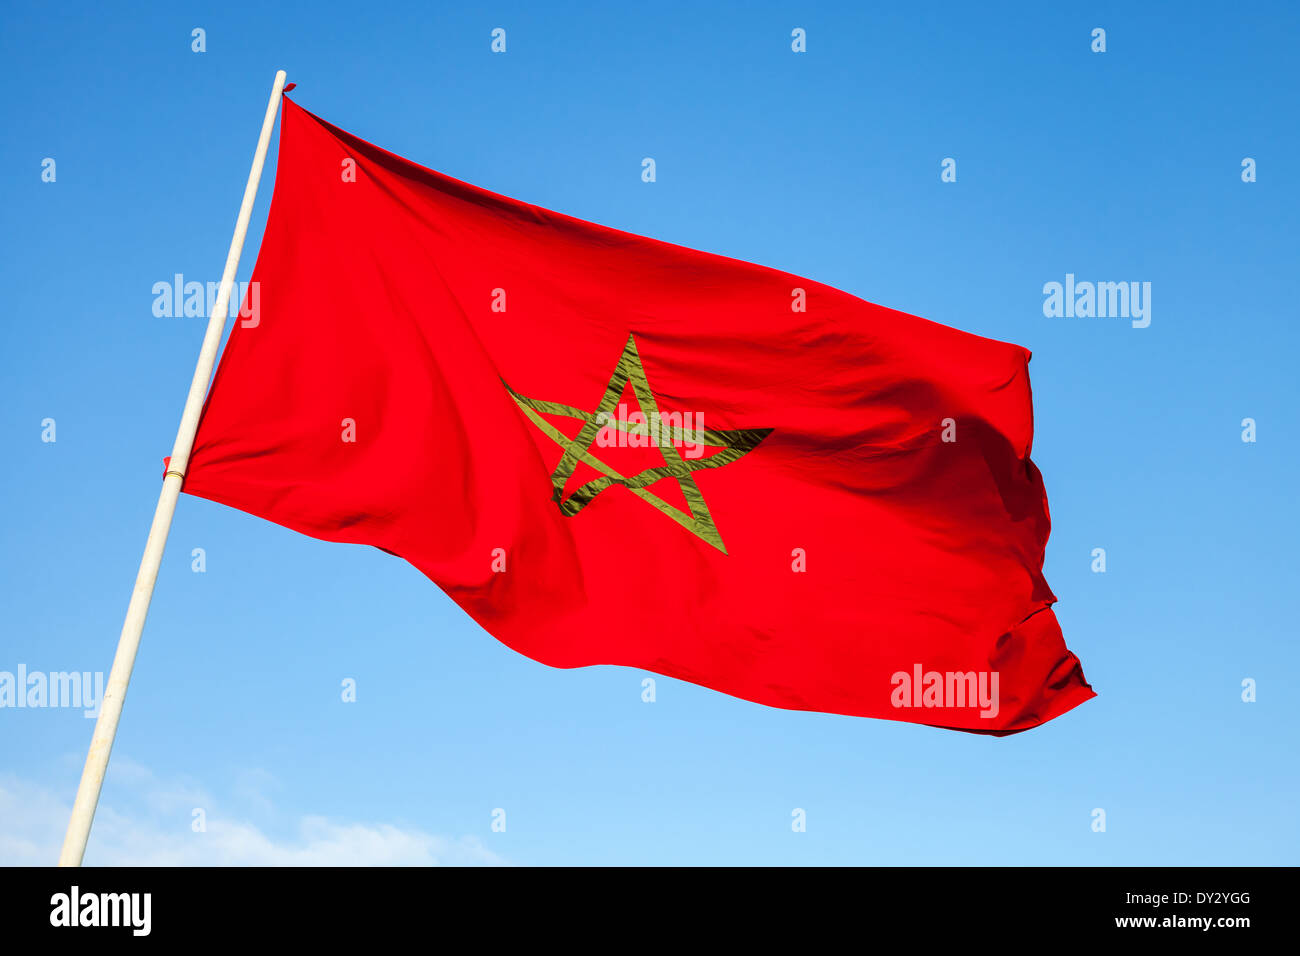 Drapeau national du Maroc au-dessus de ciel bleu Banque D'Images